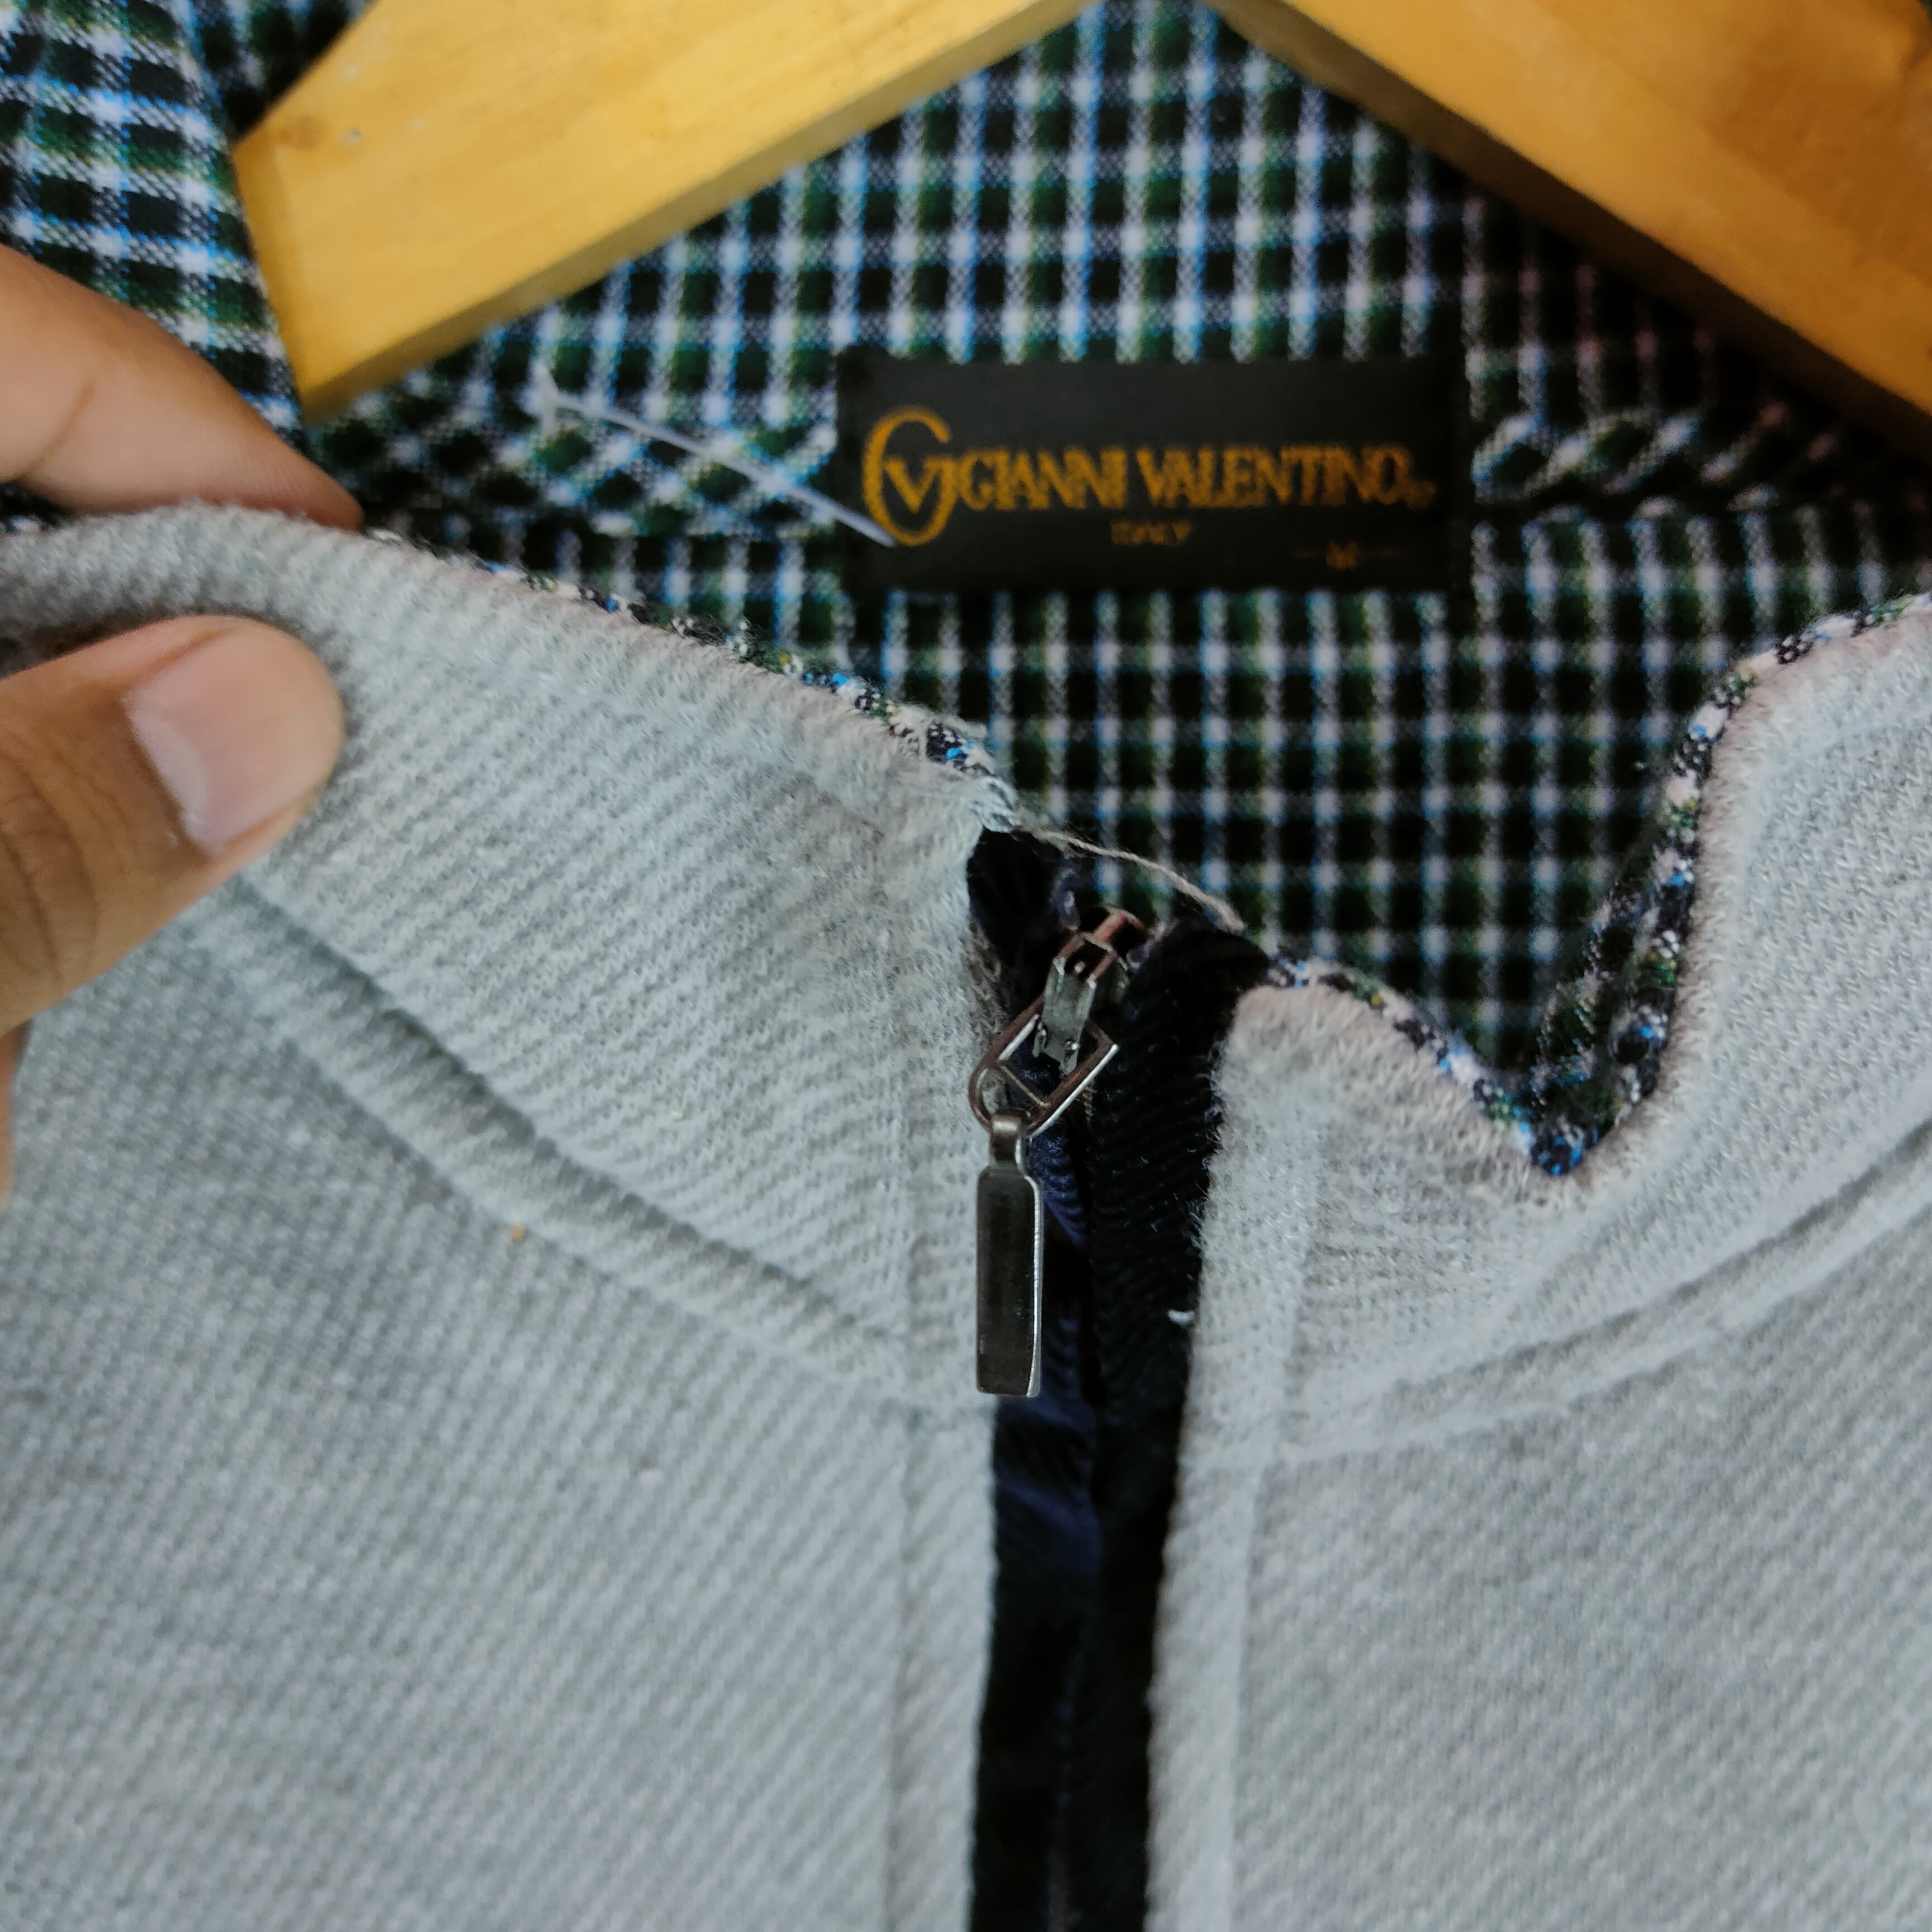 Gianni - GIANNI VALENTINO Embroidery Logo Pocket Fleece Sweatshirt - 4